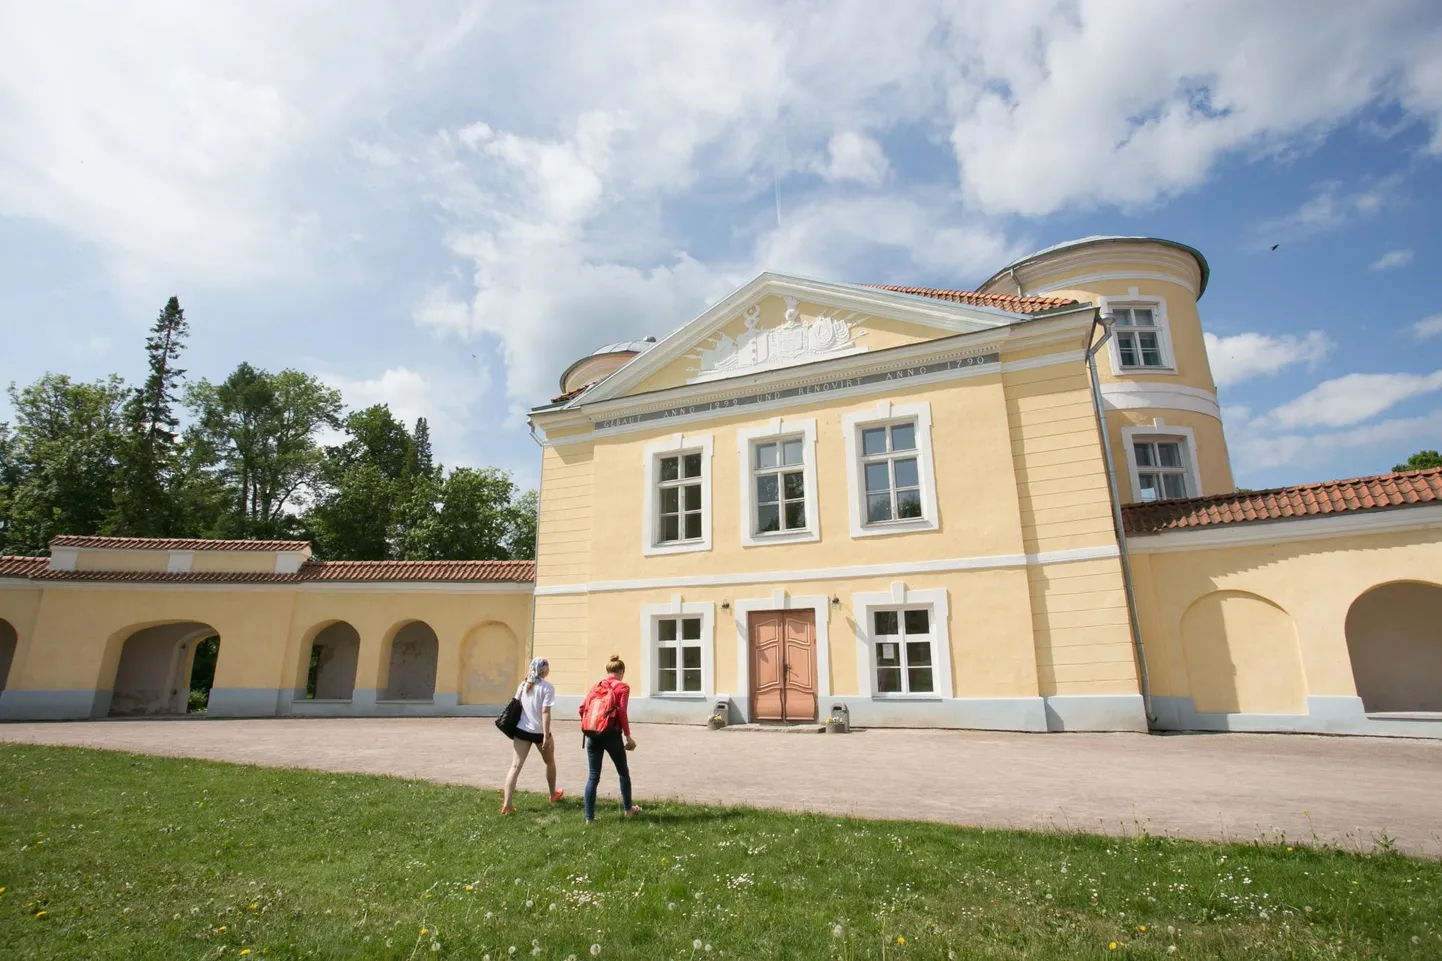 Kiltsi kool tegutseb 1790-ndatel ehitatud mõisahoones, mis on kuulunud mitmele aadlisuguvõsale, sealhulgas meresõitjale ja õpetlasele Adam Johann von Krusensternile.